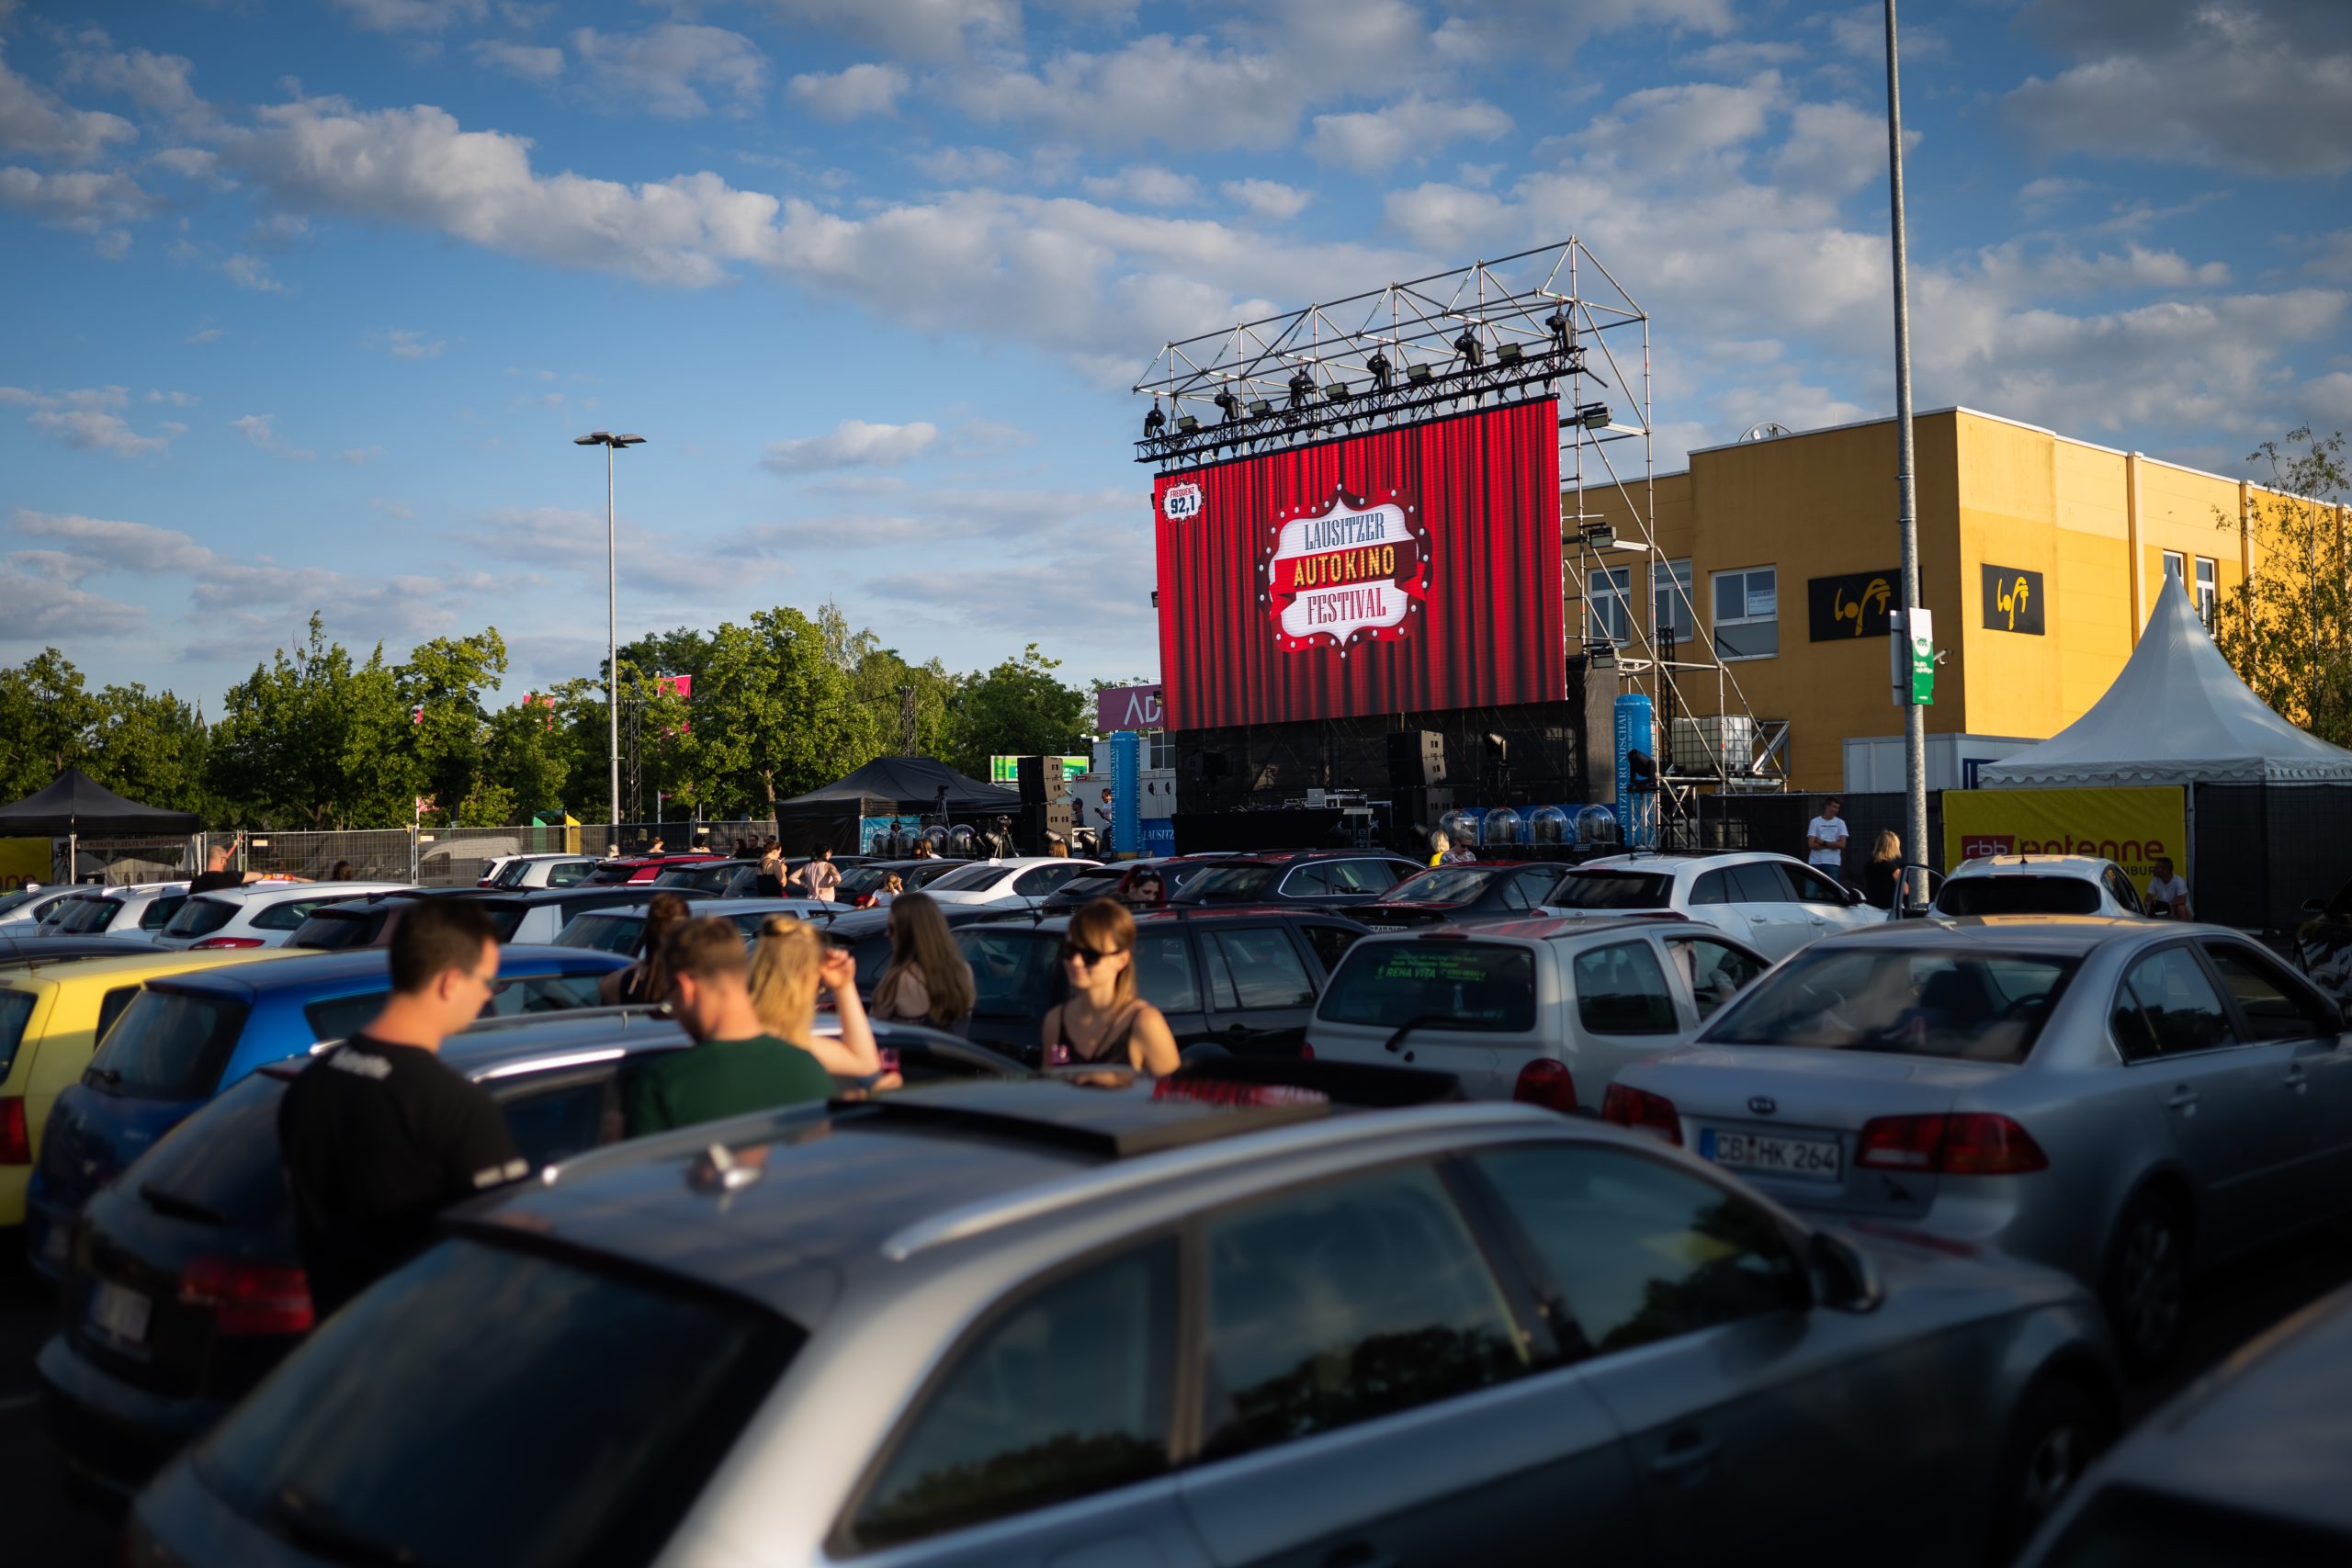 Zweites Autokino-Festival in Cottbus mit Konzerten, Shows und Filmen NIEDERLAUSITZ aktuell